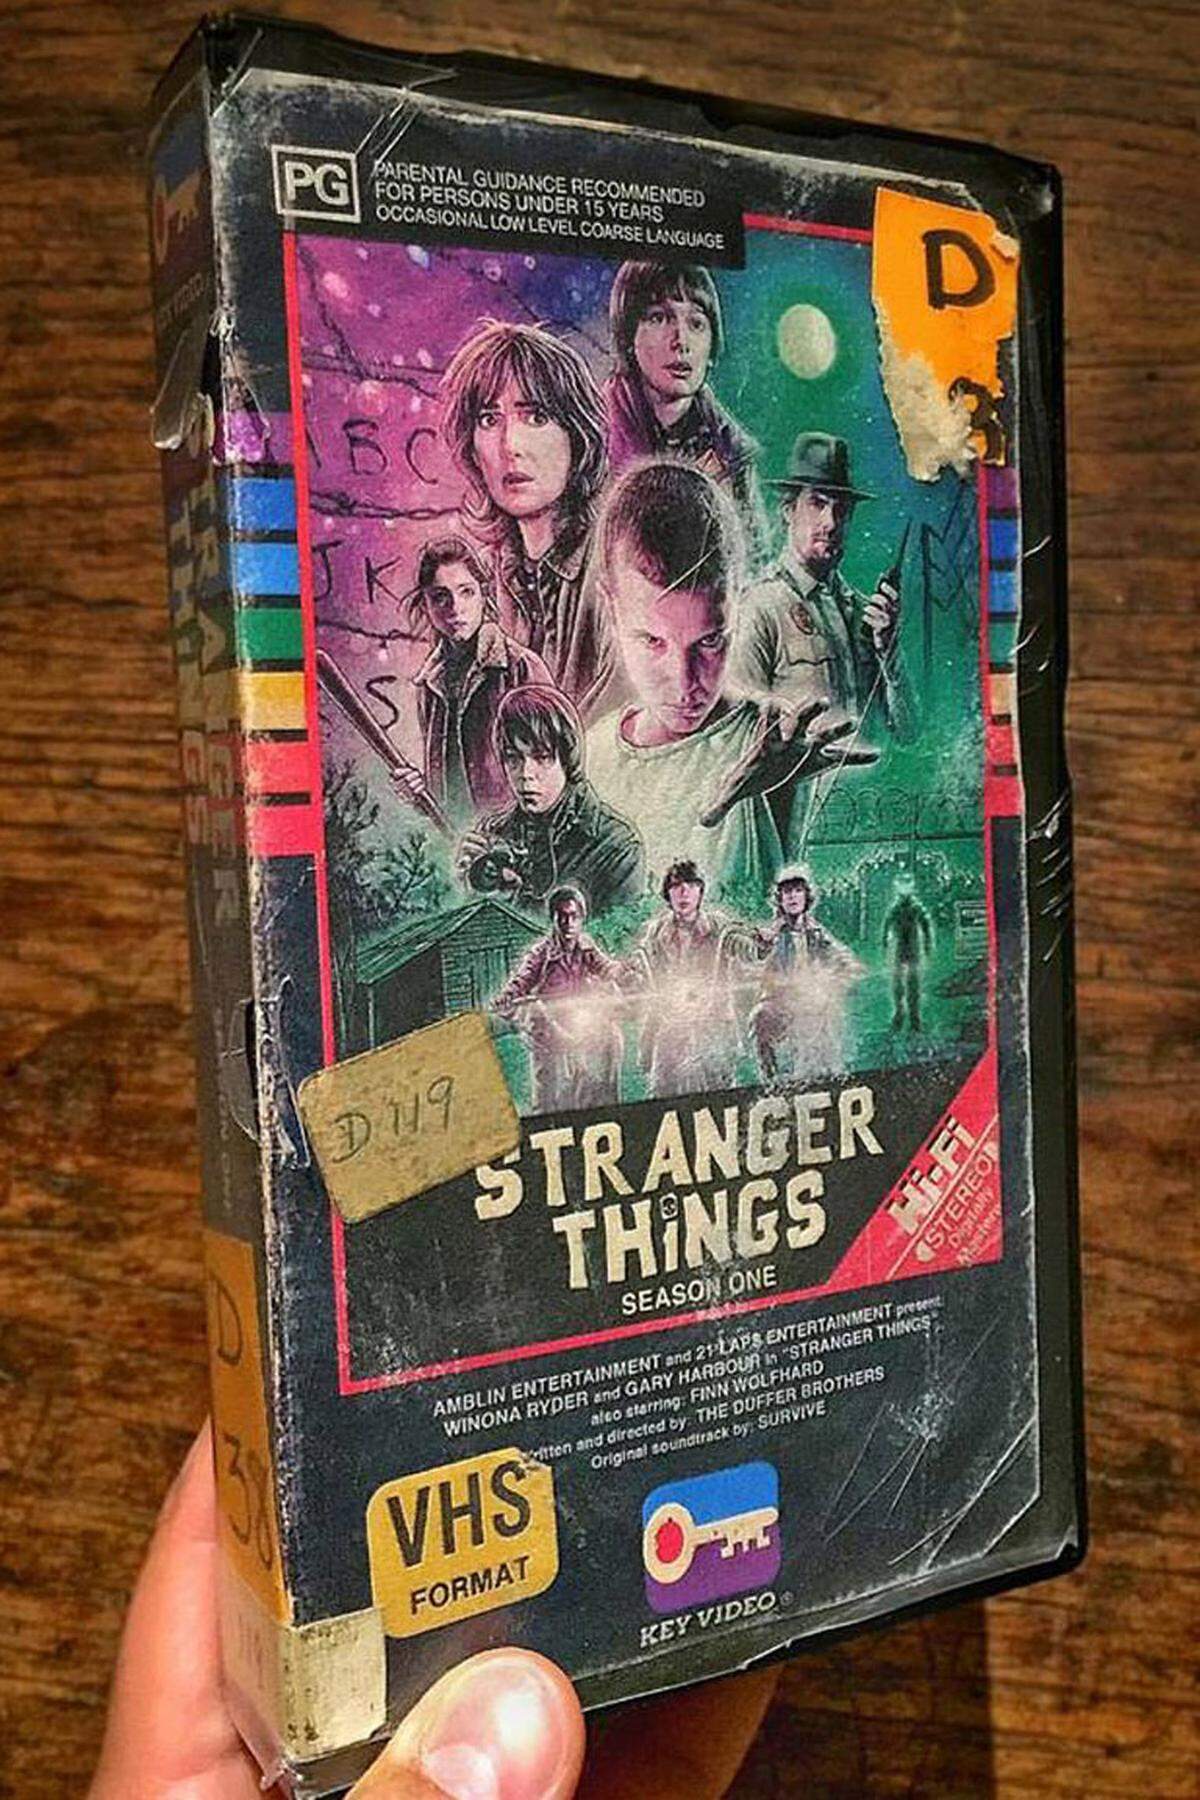 Die jüngste Kreation: Das VHS-Cover für die wunderbare Sci-Fi-Serie "Stranger Things" (Netflix), die passenderweise ein Tribut an die Meister der 80er-Jahre (Carpenter, King, Spielberg) ist.